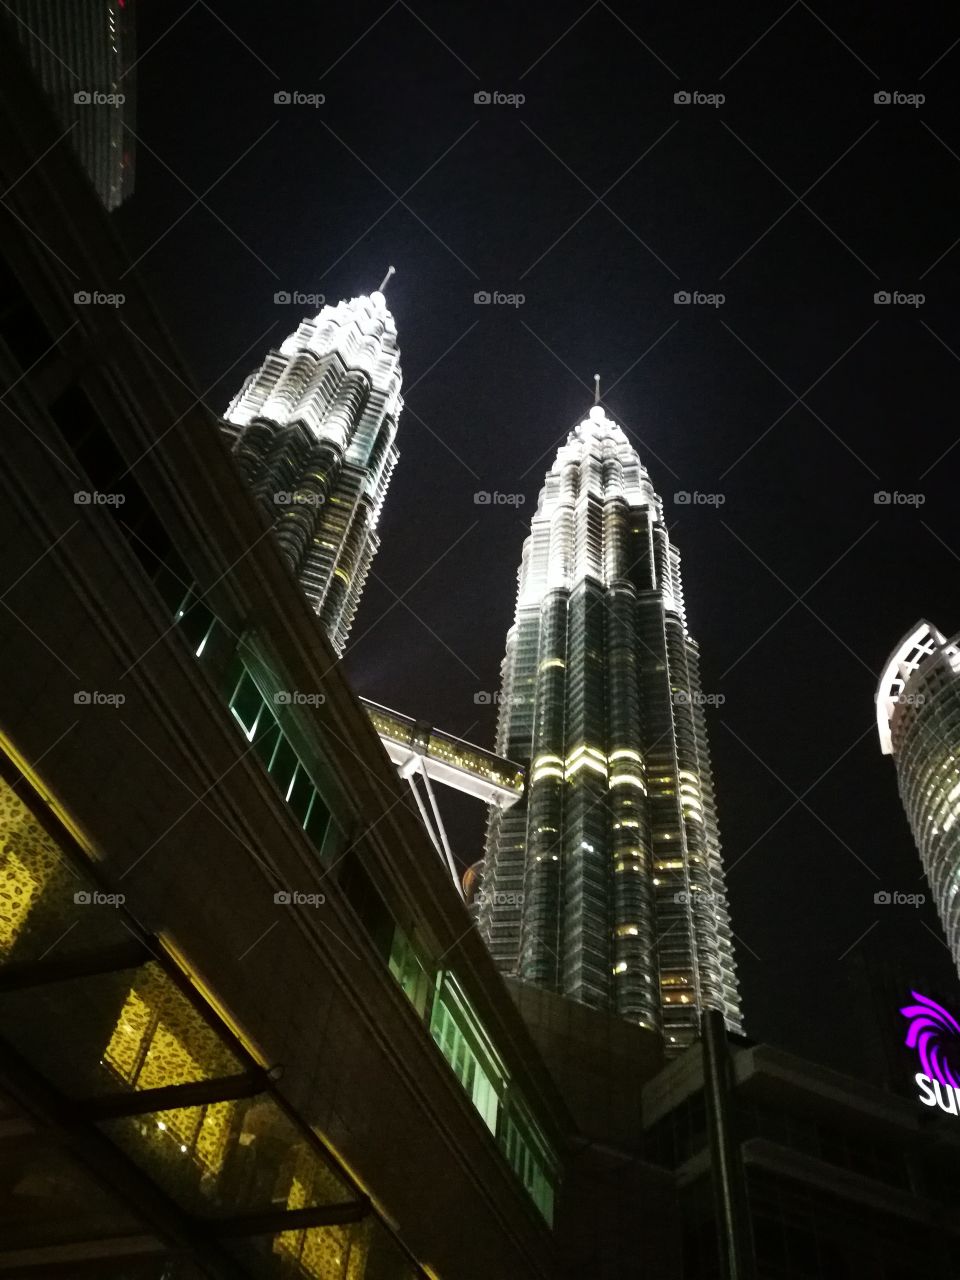 Klcc Kuala Lumpur twin towers landscape